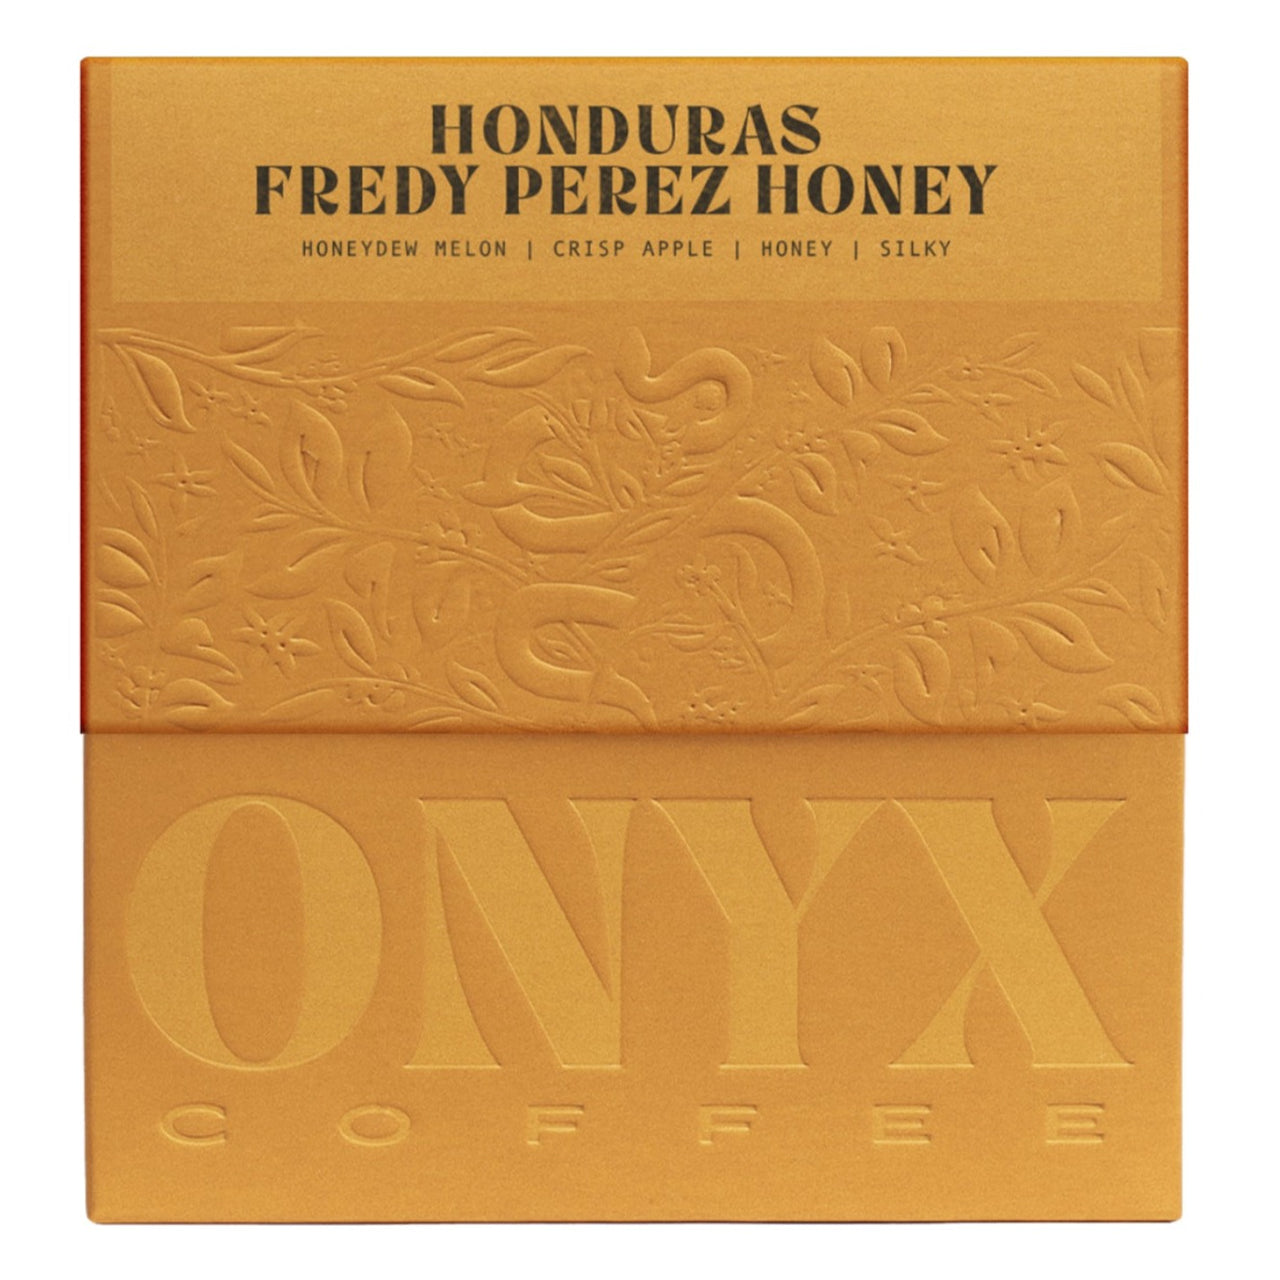 Honduras Fredy Perez Honey Coffee